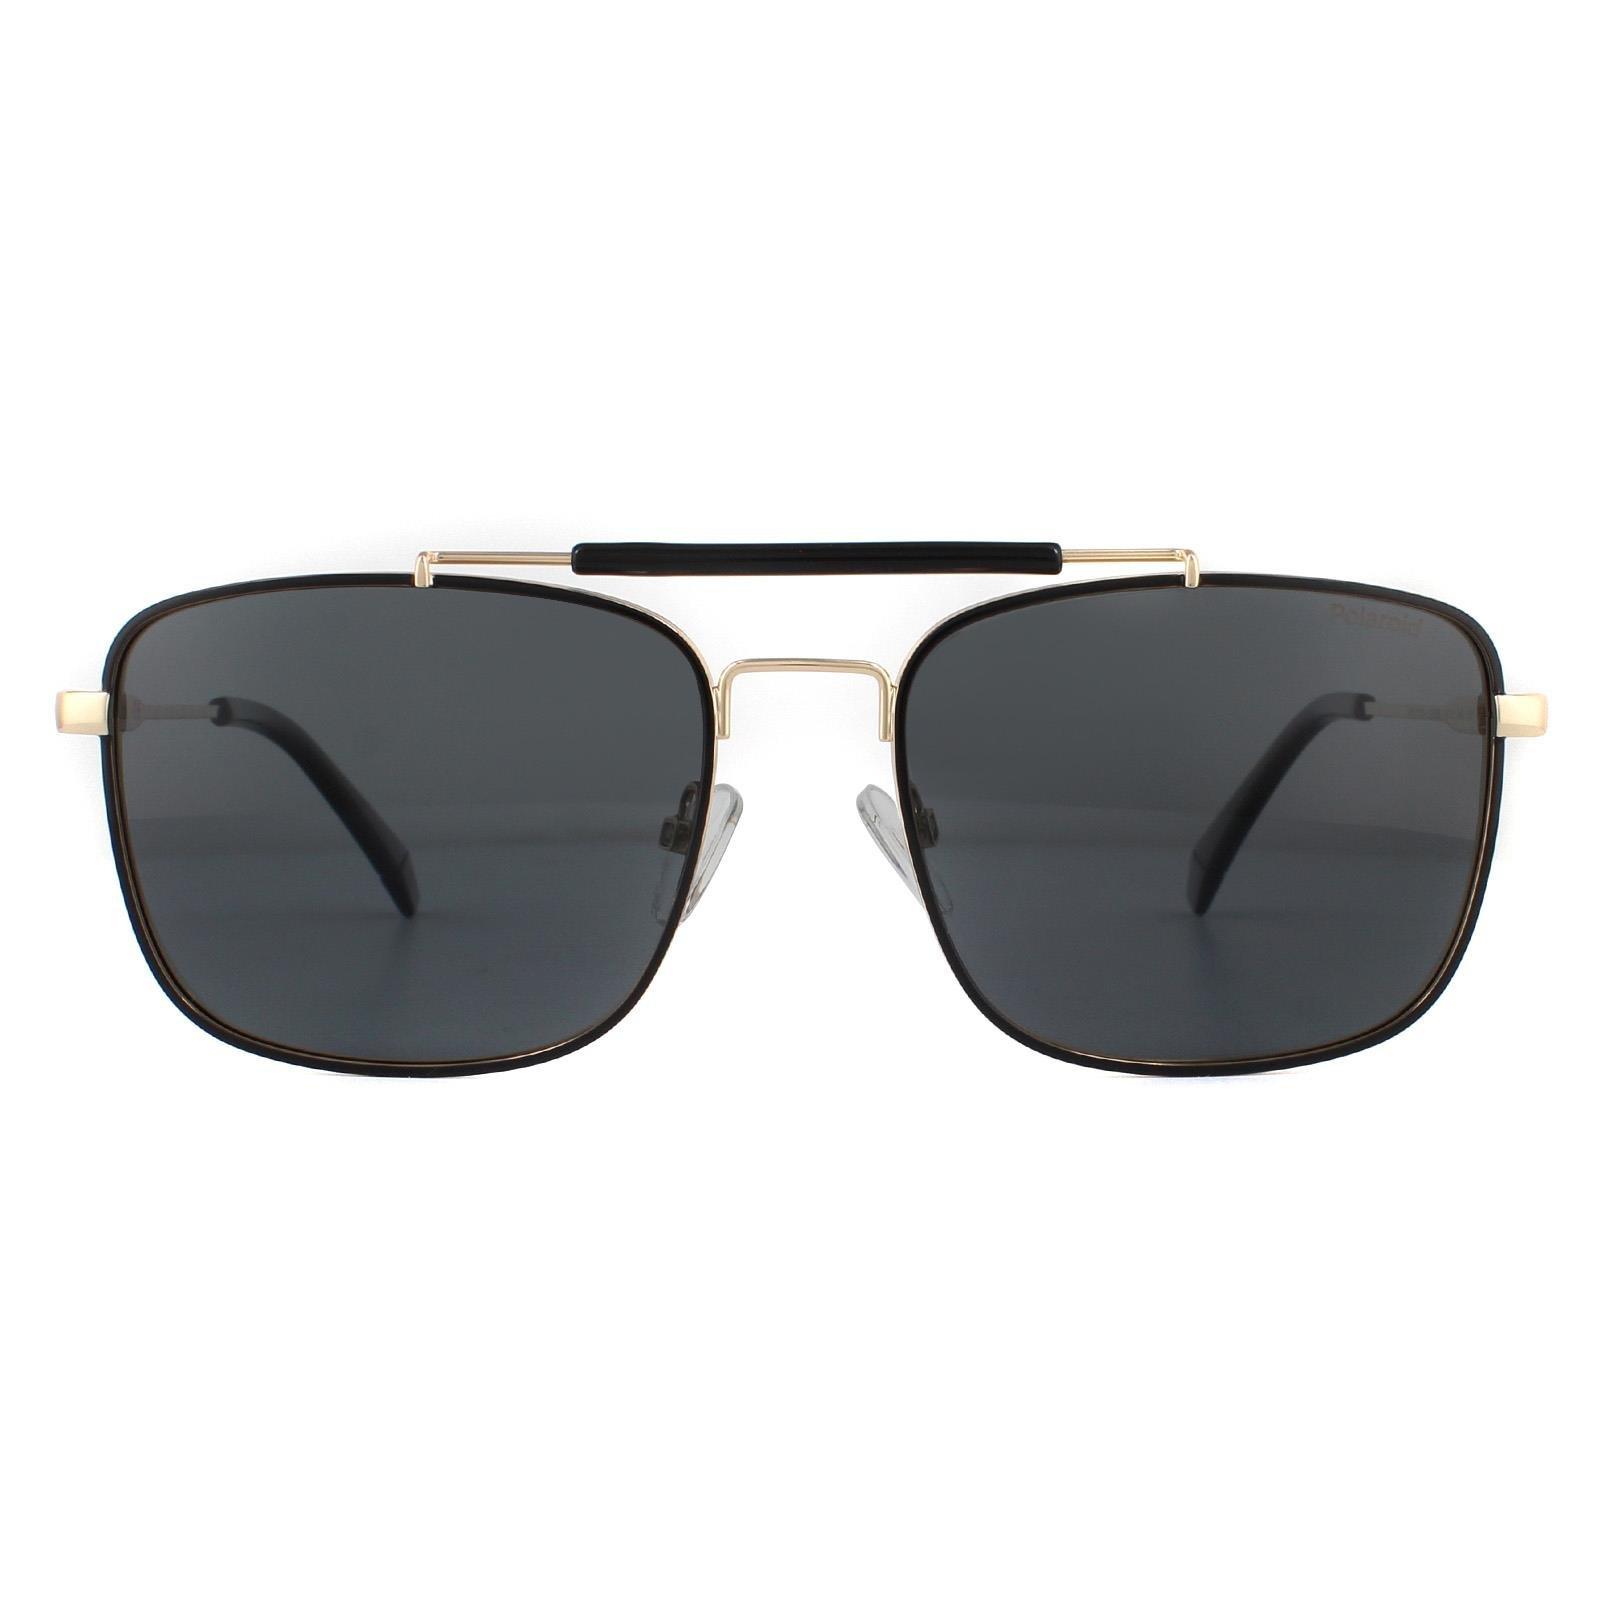 Поляризованные солнцезащитные очки Aviator Black Gold Grey Polaroid, золото polaroid kids pld 8053 s 9ht m9